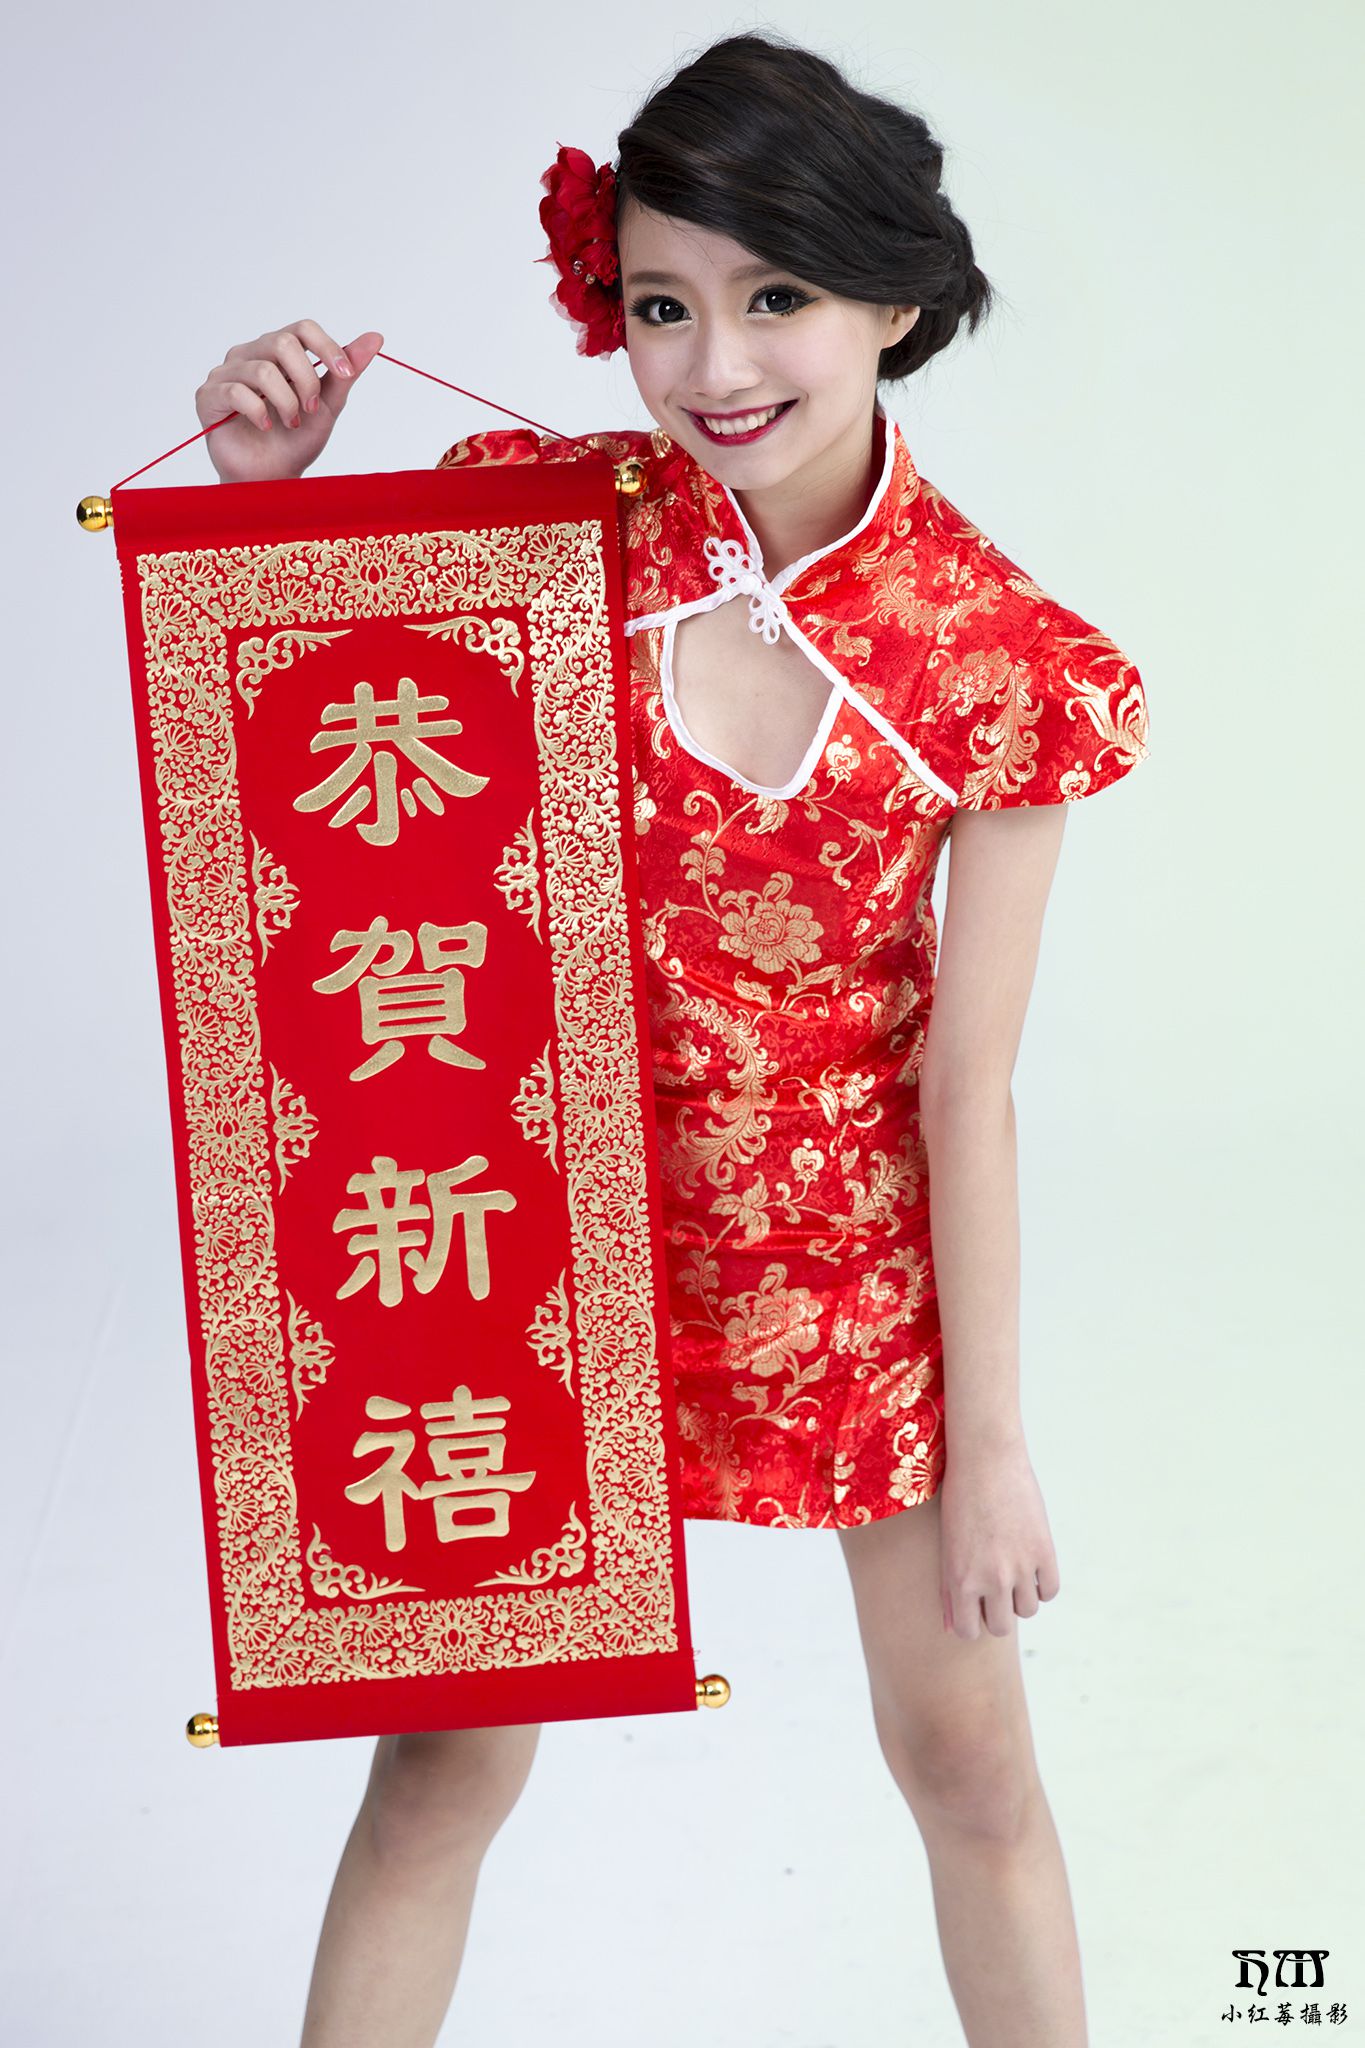 台湾圣诞美女写真图片合辑(多名出镜模特)